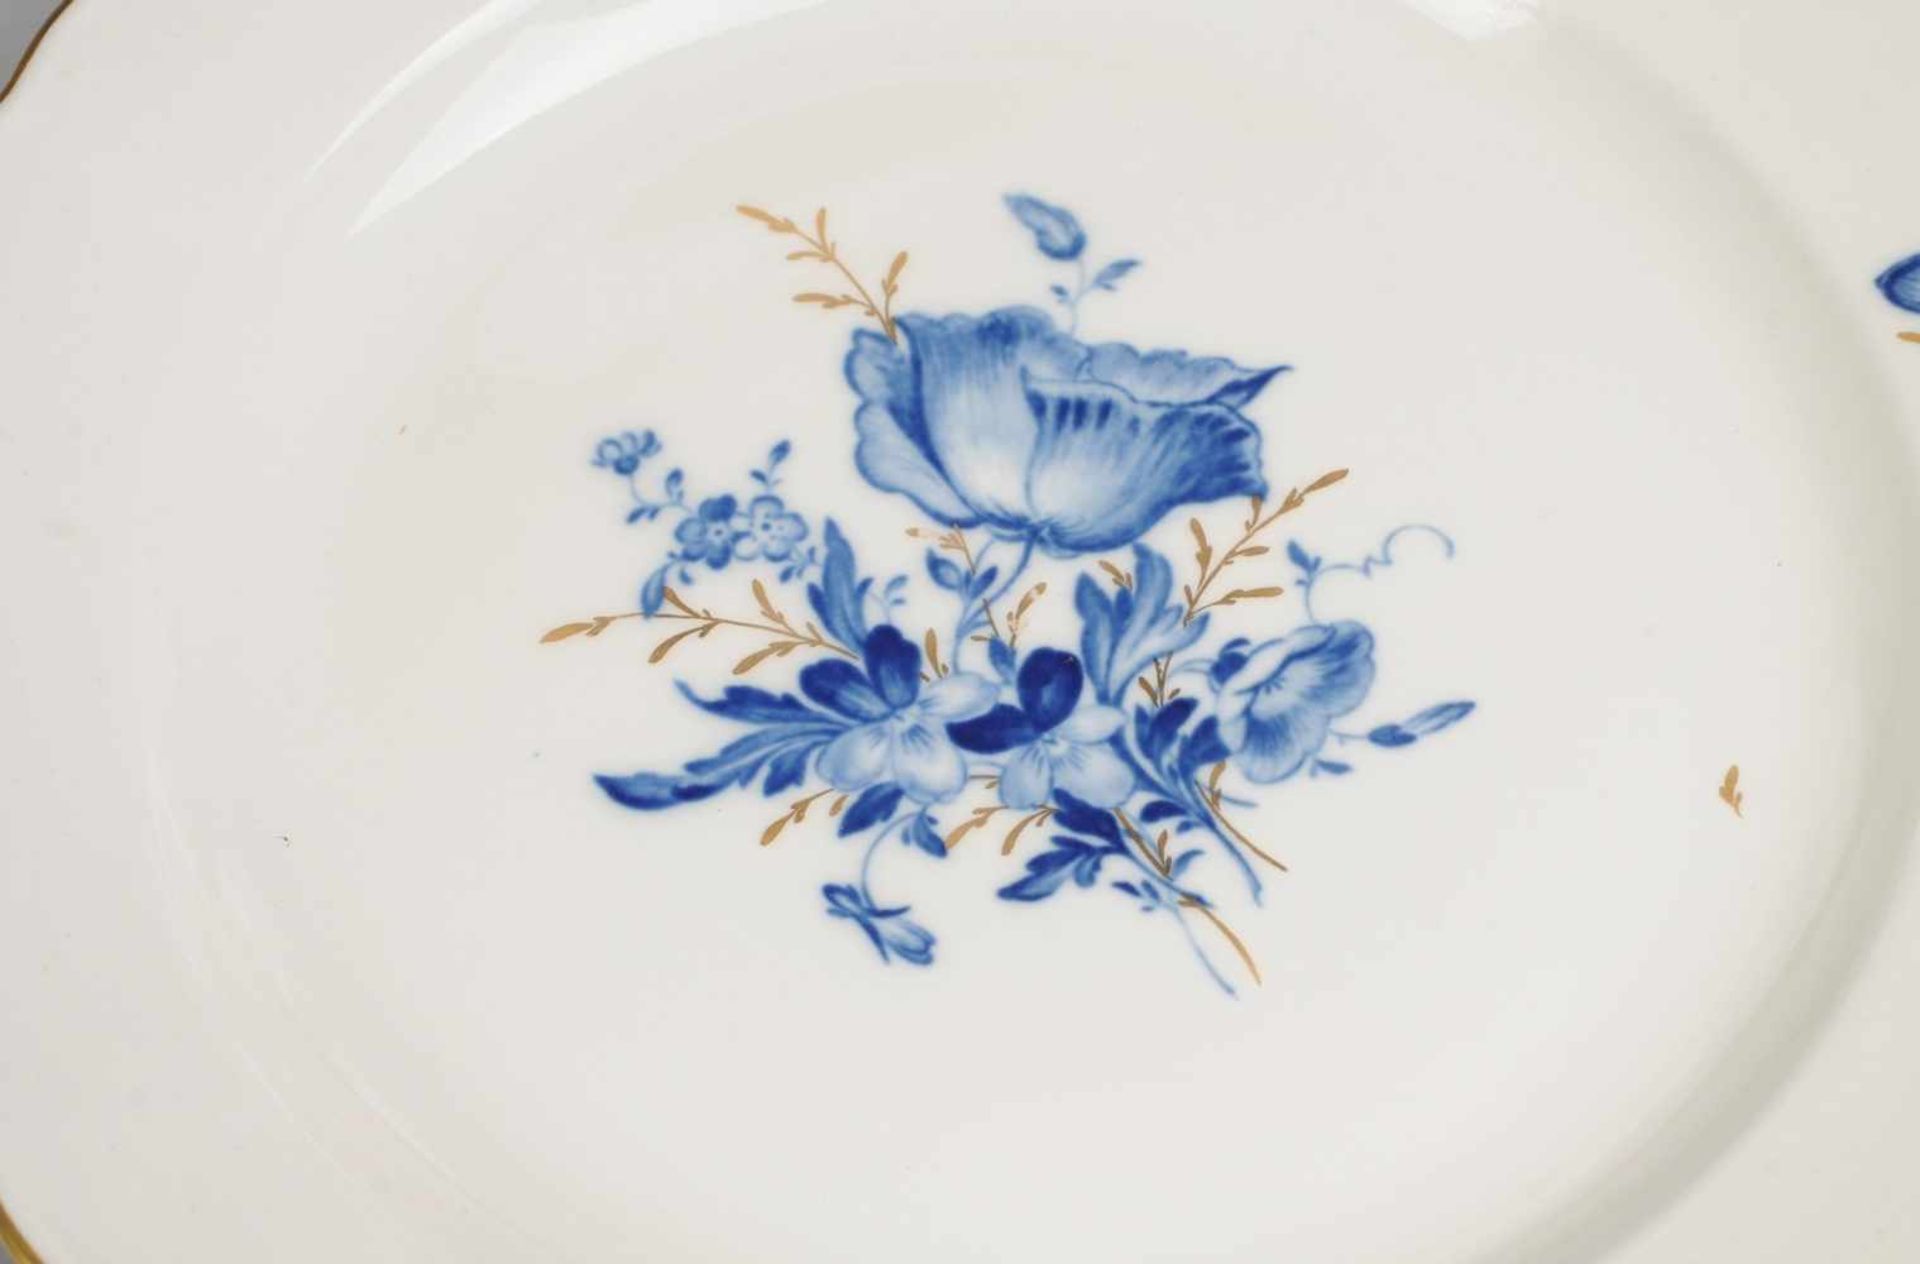 Speiseservice "Blaue Blume mit Insekten" für sechs Personen 23-tlg. Weiß, glasiert. Je 6 Suppen-, - Image 2 of 3